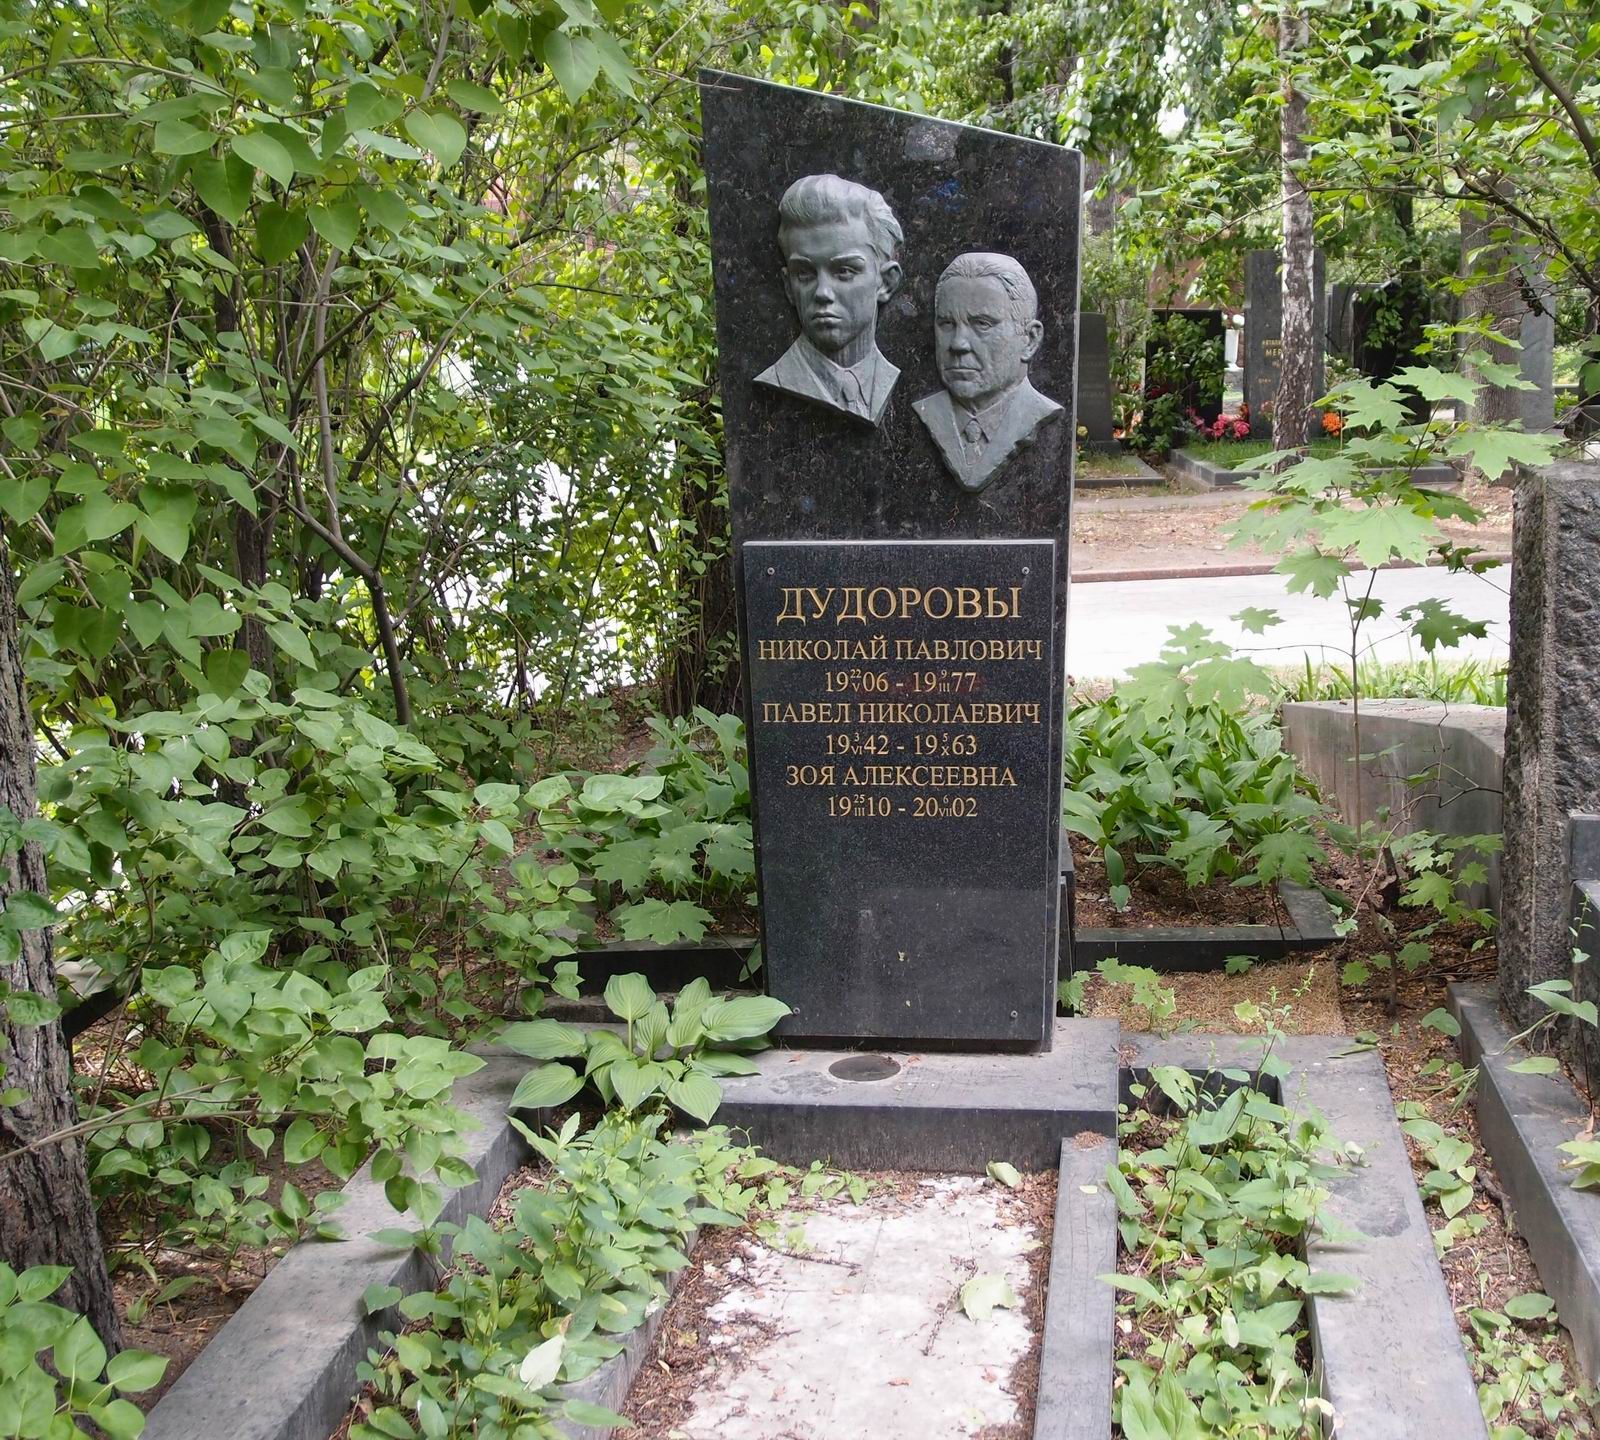 Памятник на могиле Дудорова Н.П. (1906-1977), на Новодевичьем кладбище (8-34-7).